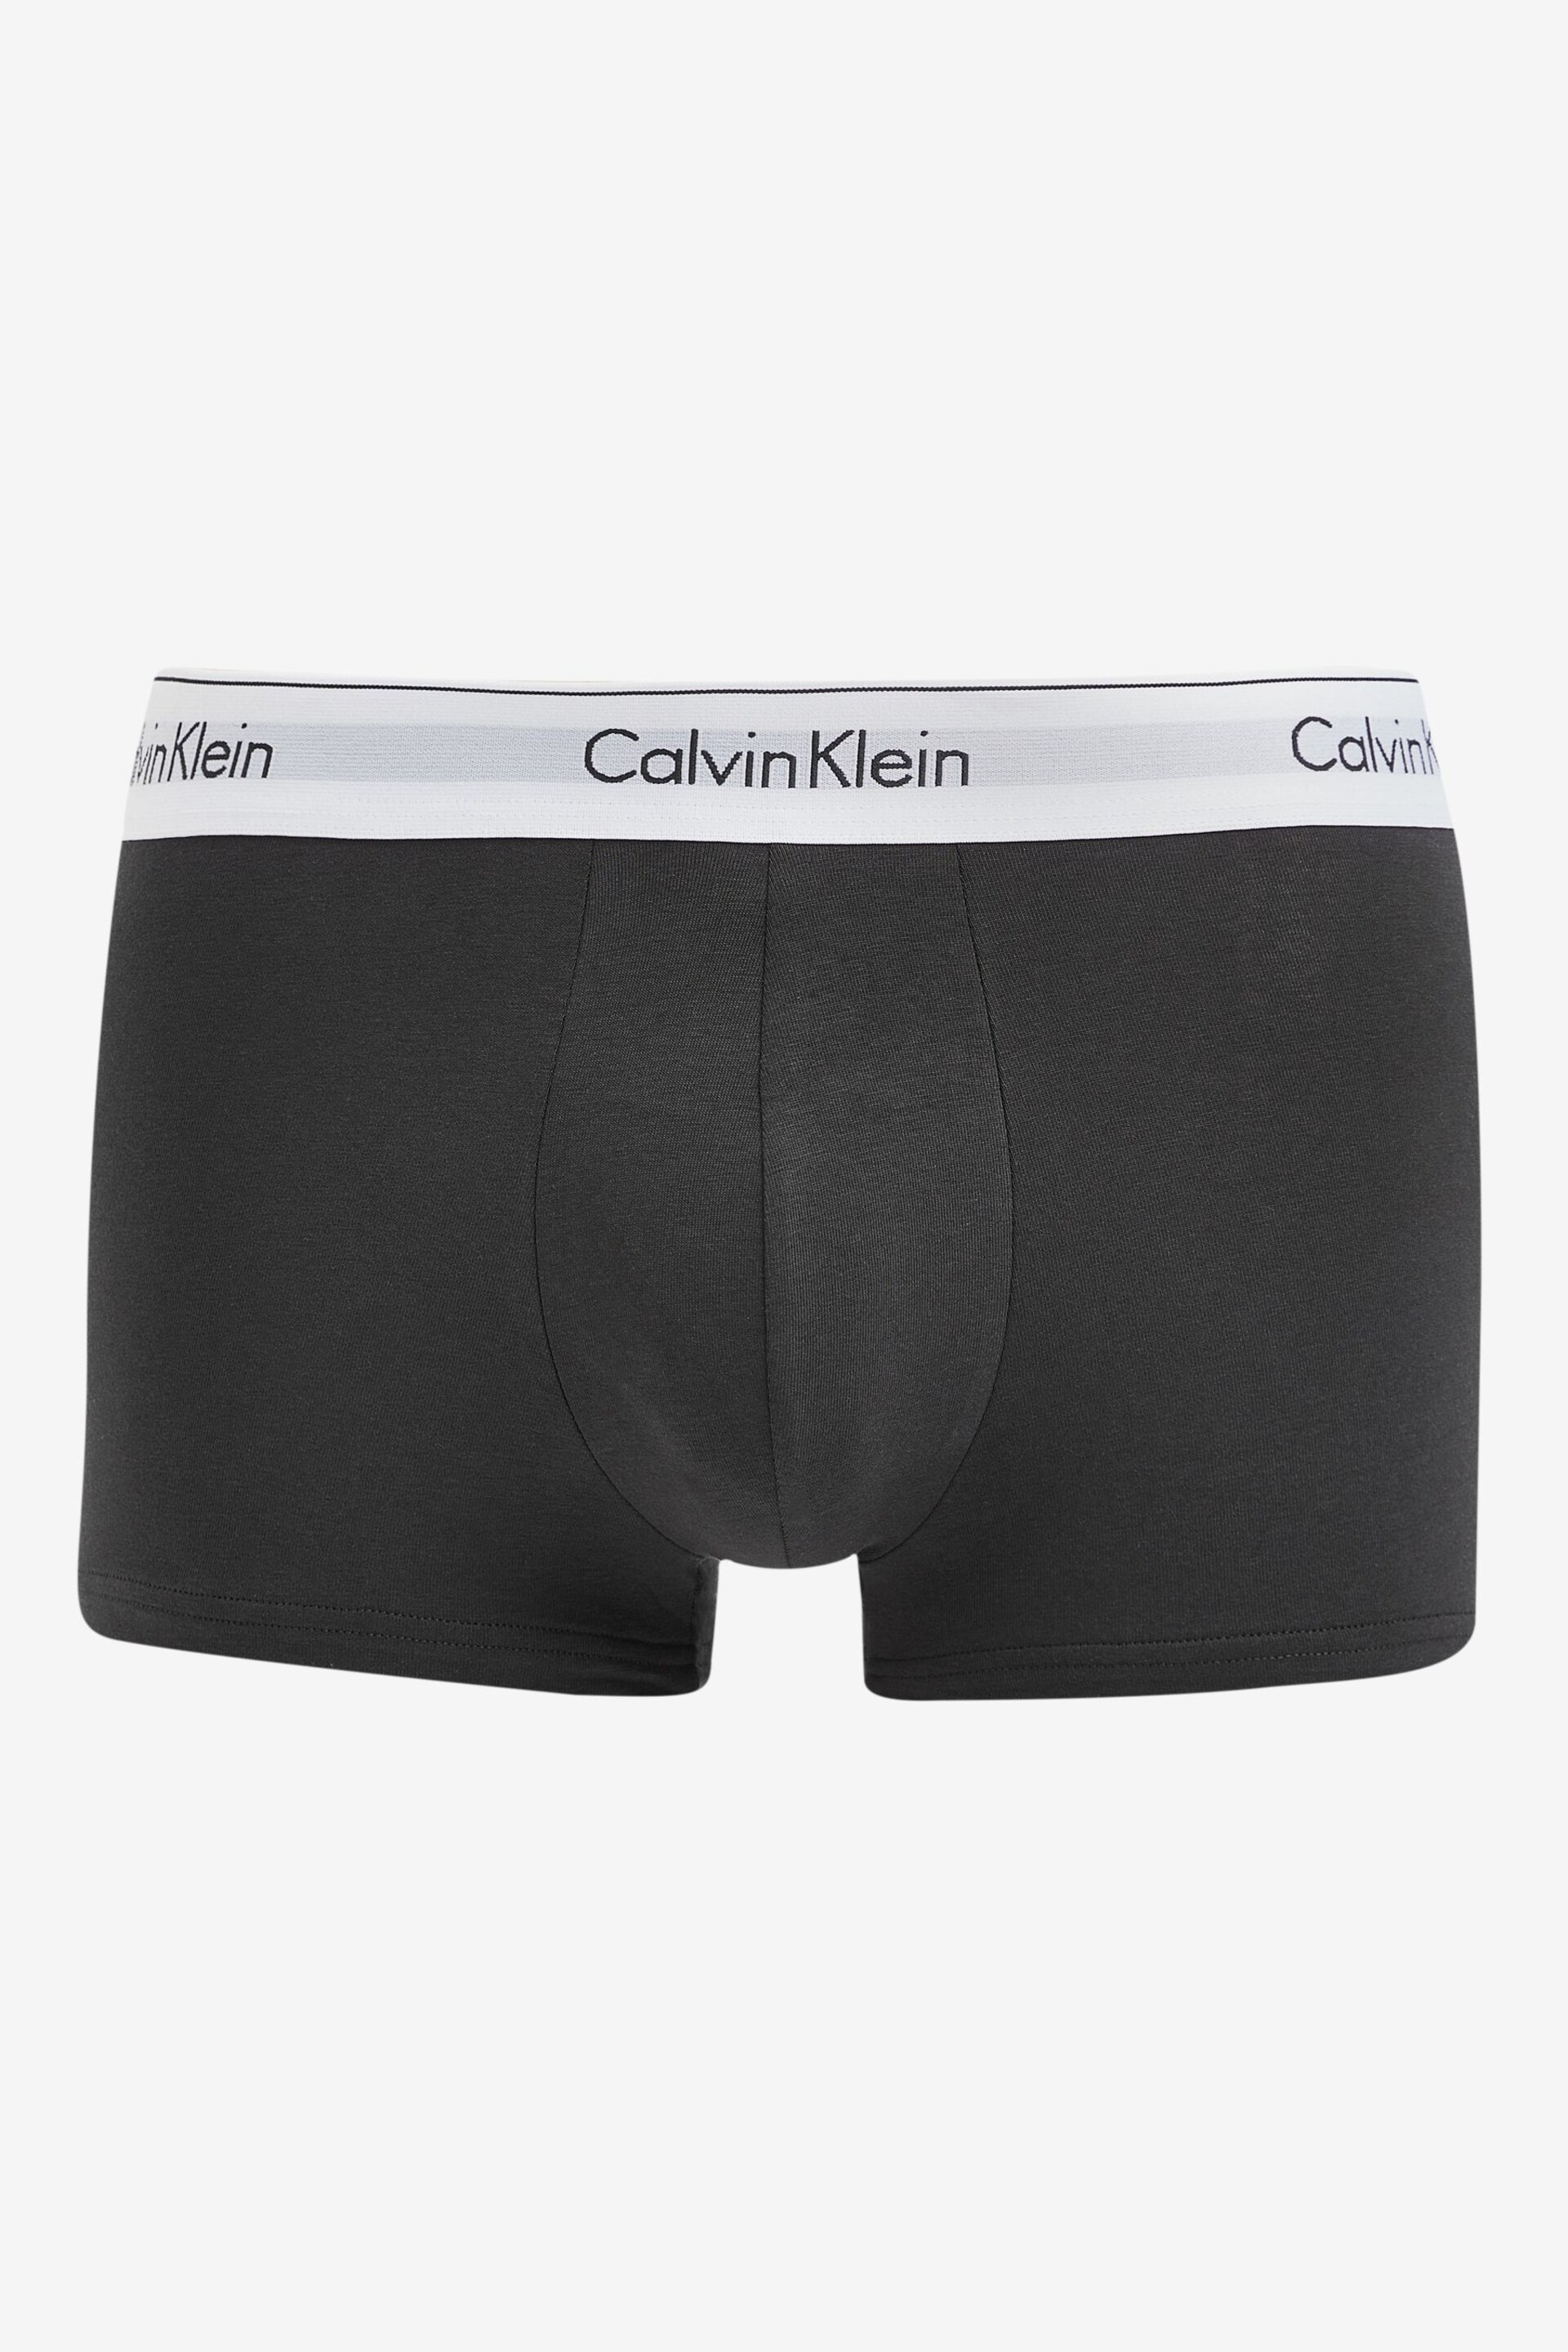 Calvin Klein Green Plain Trunks 3 Pack - Image 4 of 4